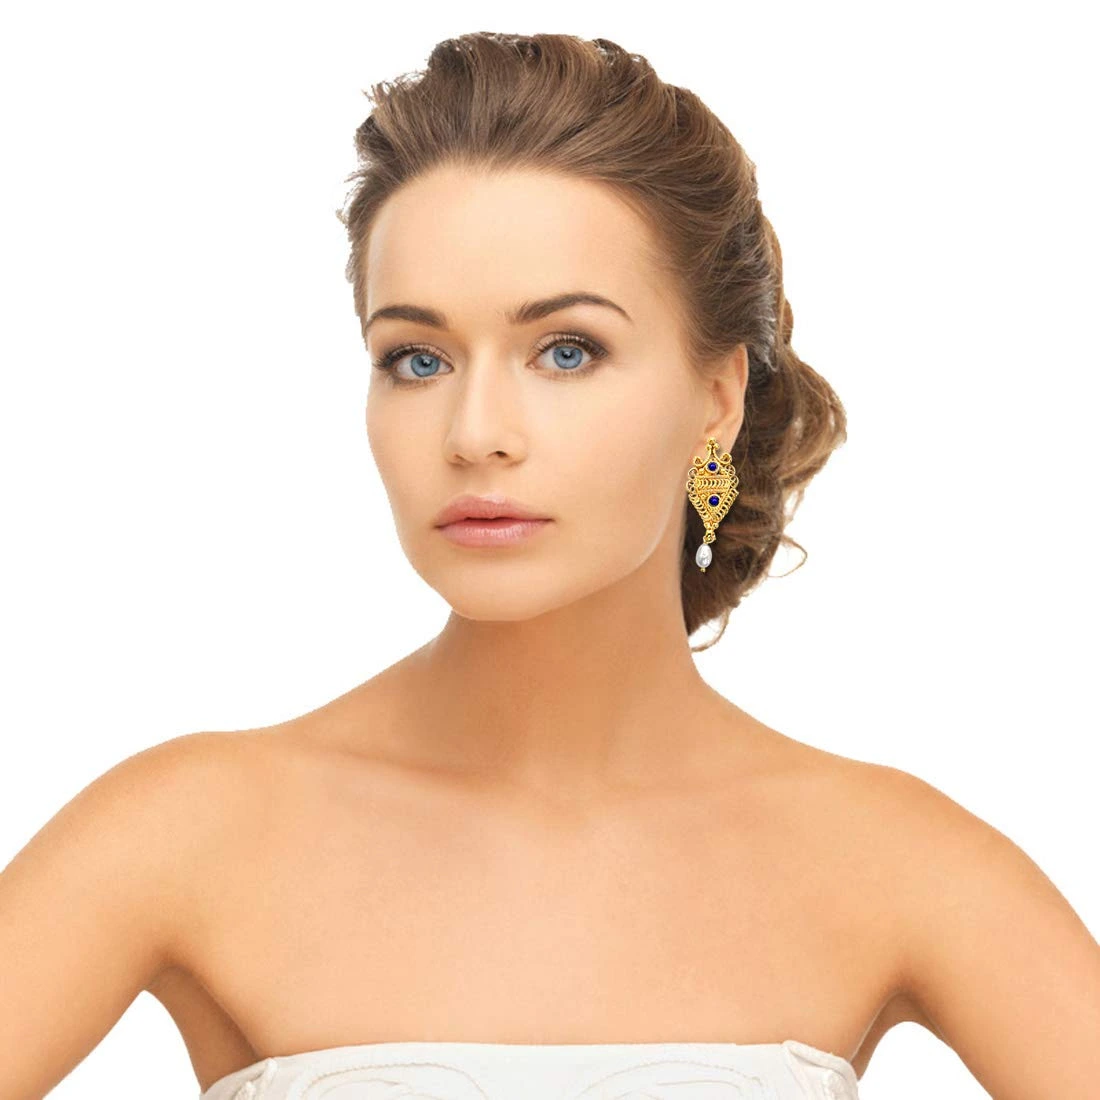 Fancy Shaped Freshwater Pearl, Blue Lapiz & Gold Plated Earrings for Women (SE139)